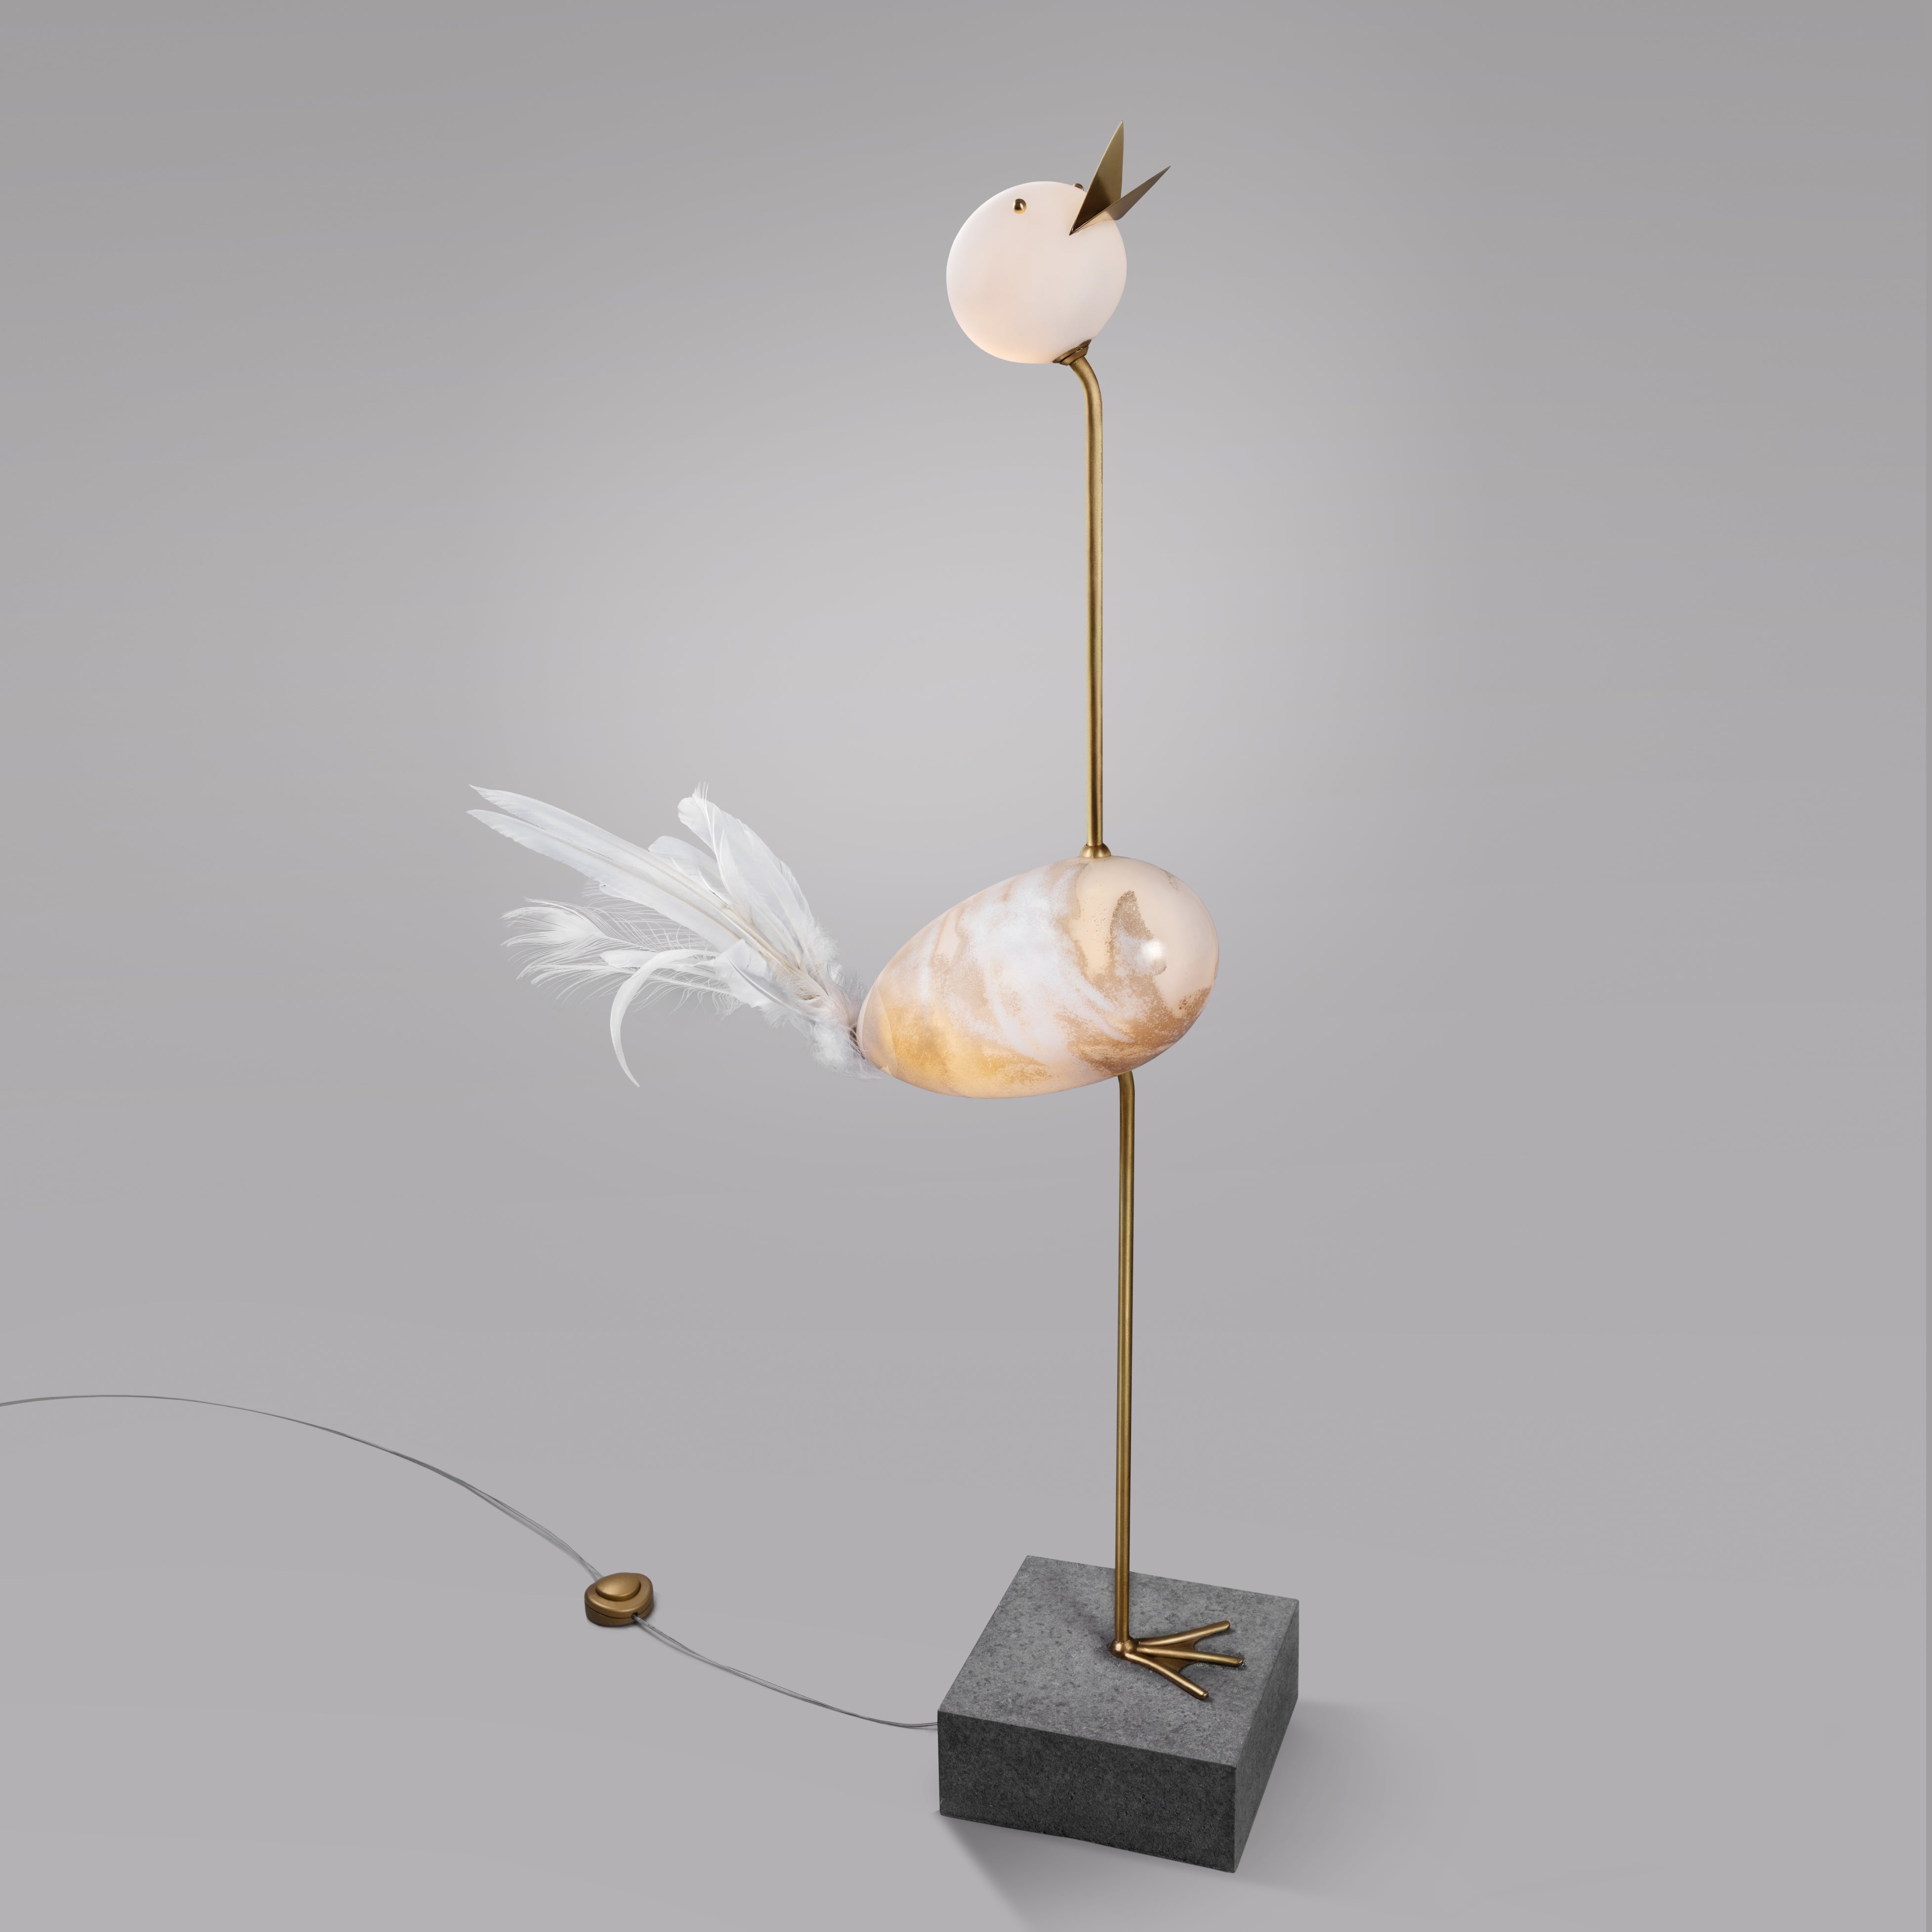 Grue, Sculpture unique de lampadaire, Ludovic Clément d'armont